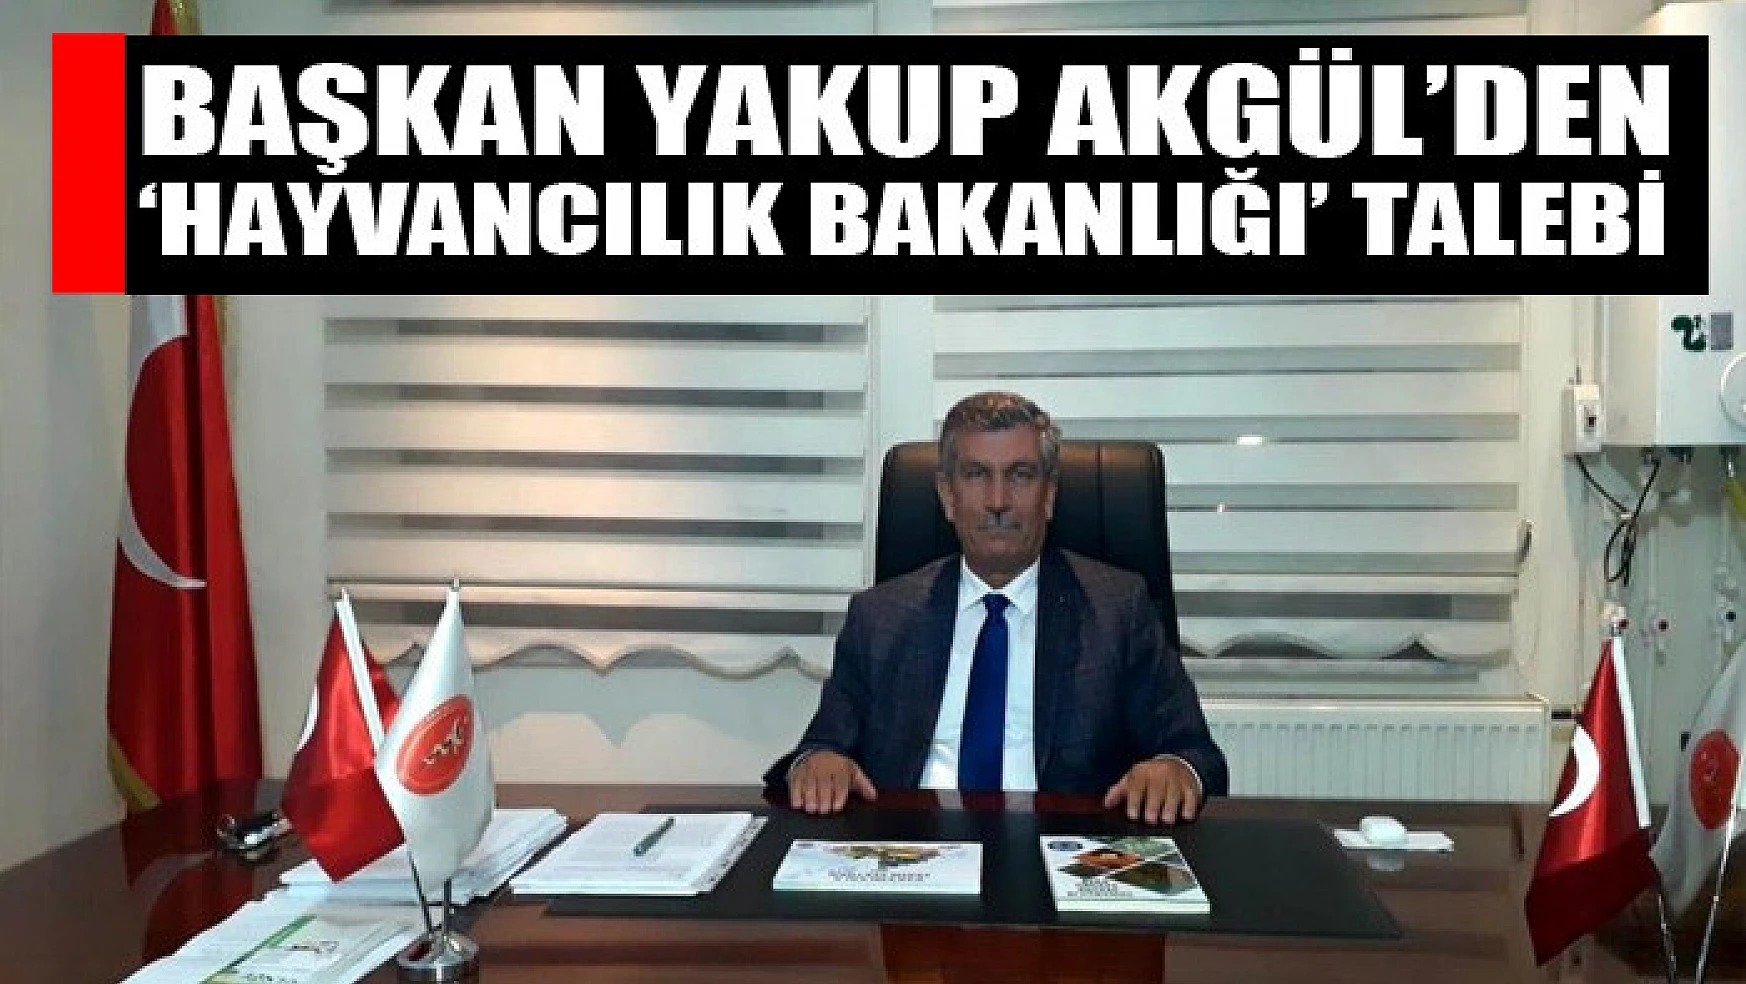 Başkan Yakup Akgül'den 'Hayvancılık Bakanlığı' talebi